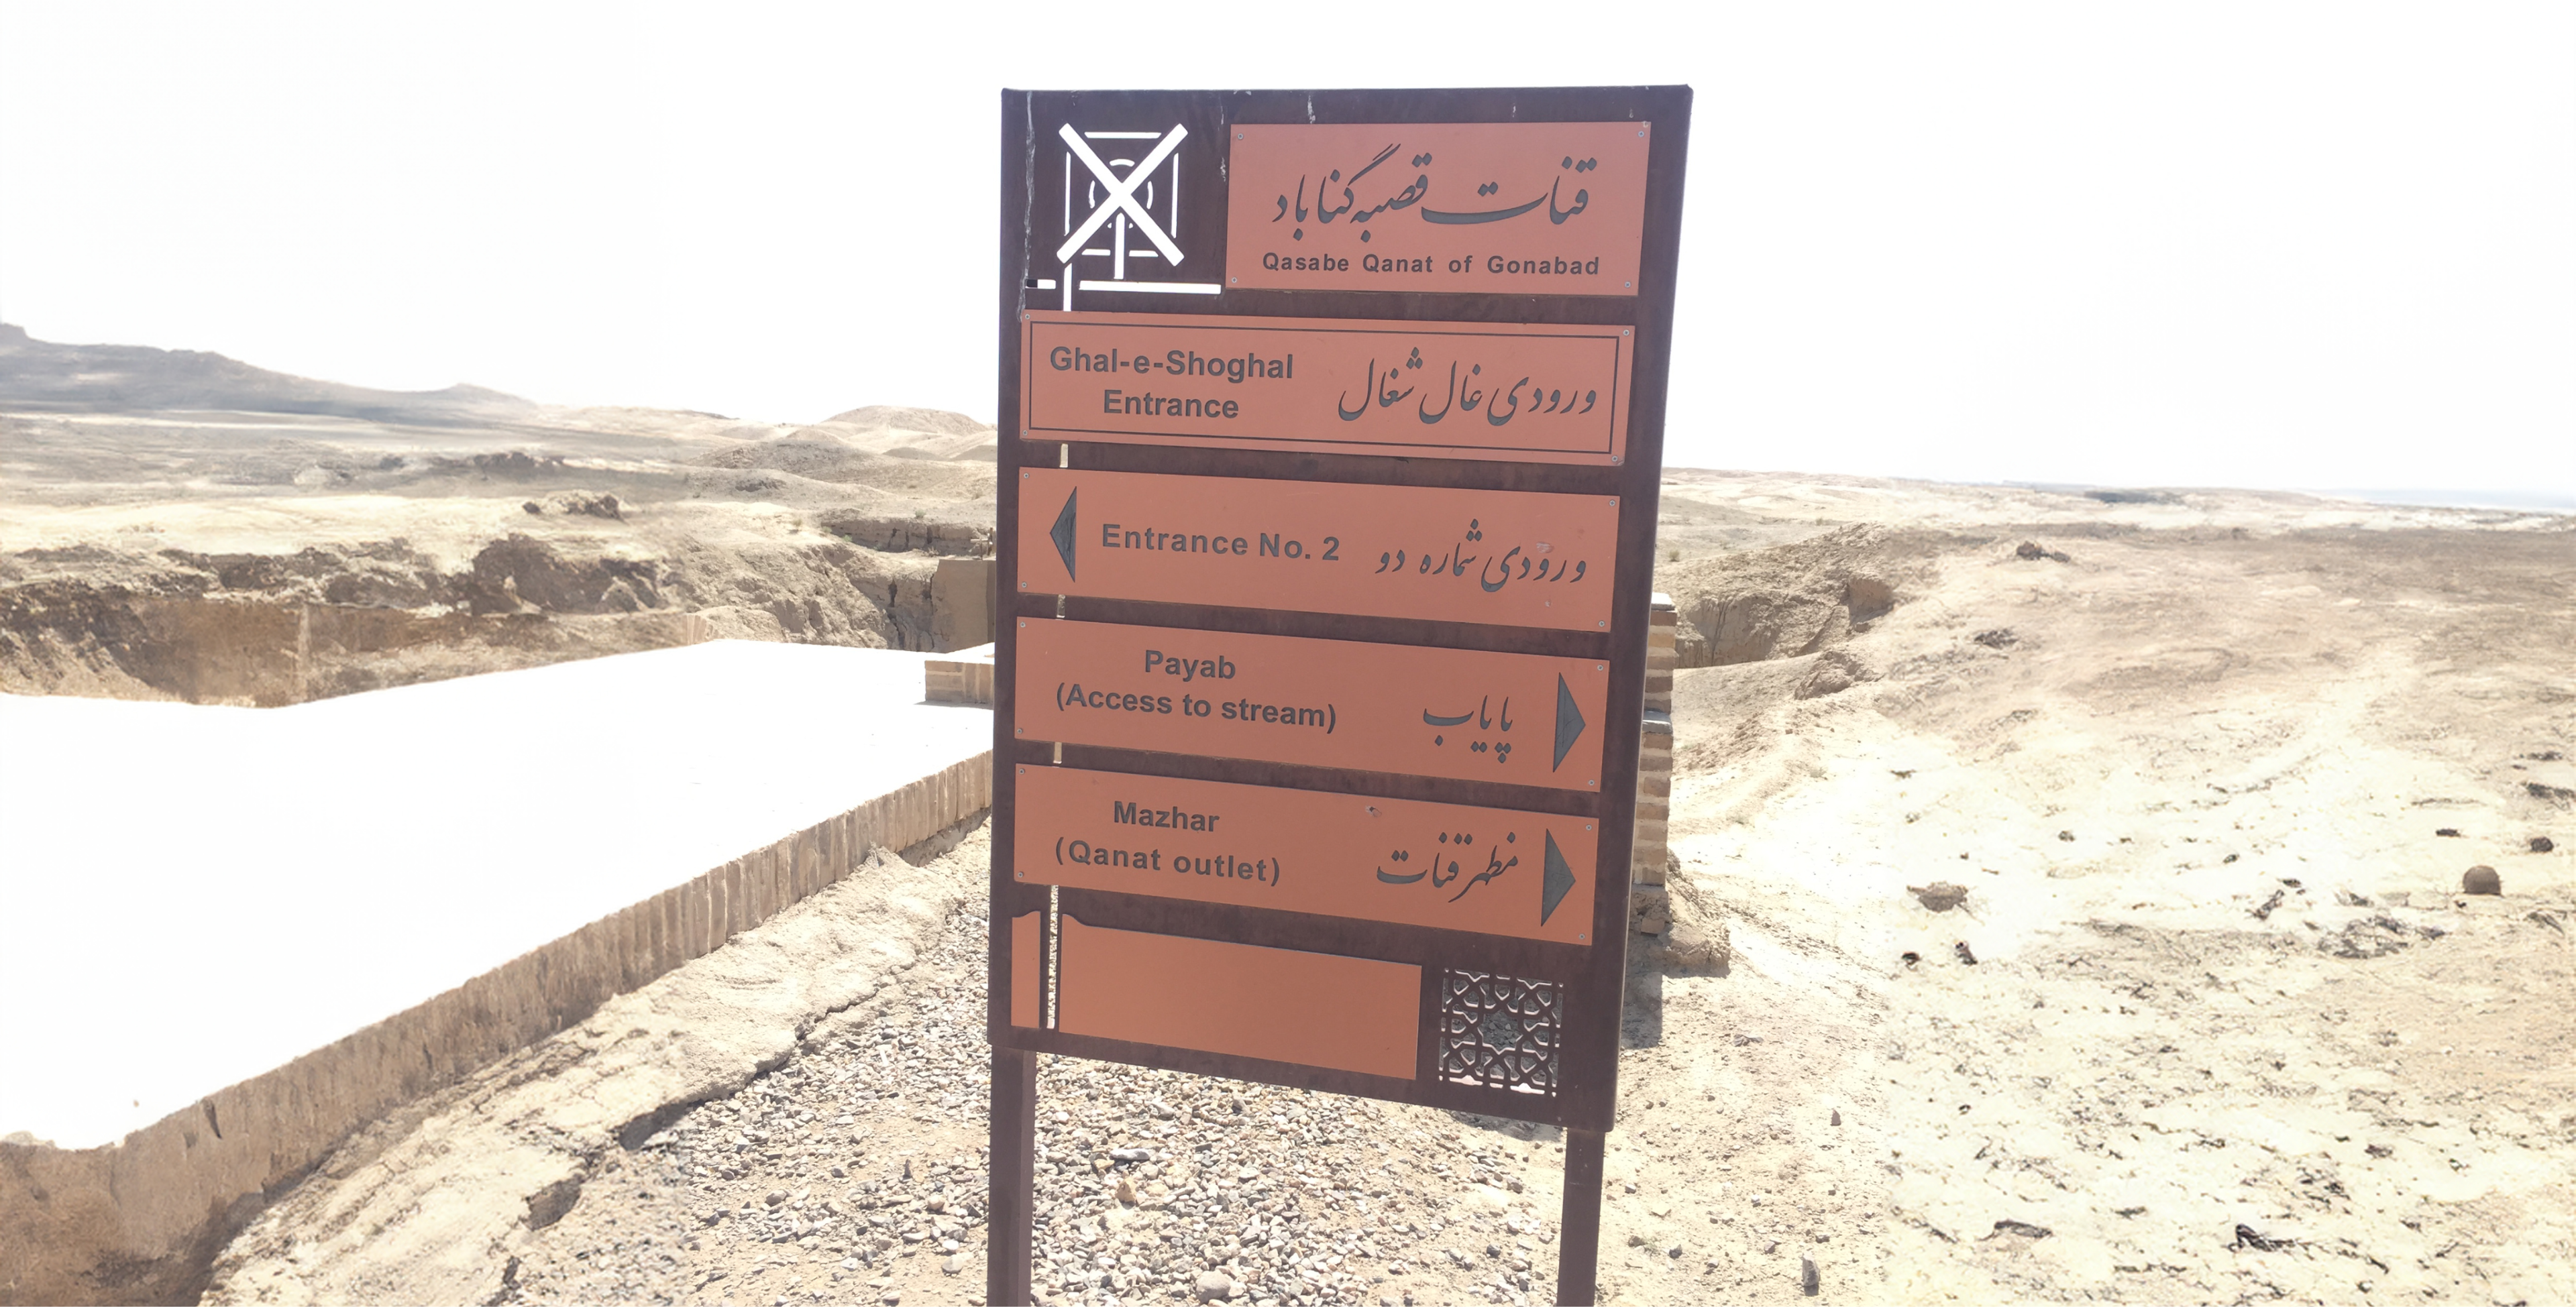 Signpost at Qasabe Qanat of Gonabad